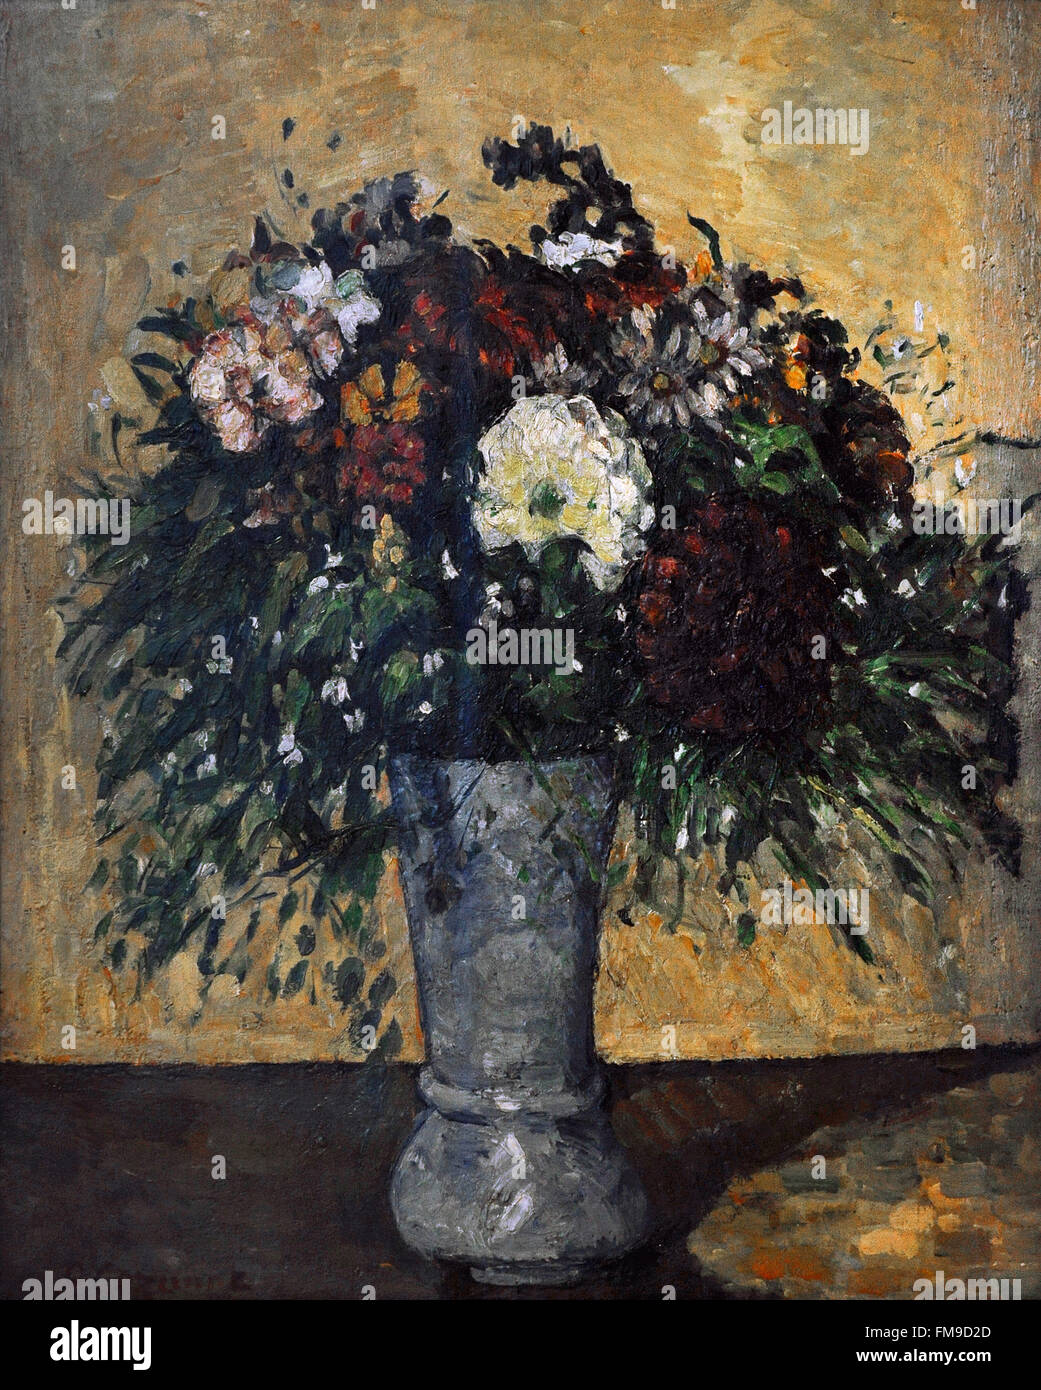 Paul Cézanne (1839-1906). El pintor francés. Ramo de flores en un jarrón, ca. 1877. Óleo sobre lienzo. El Museo Estatal del Hermitage. San Petersburgo. Rusia. Foto de stock